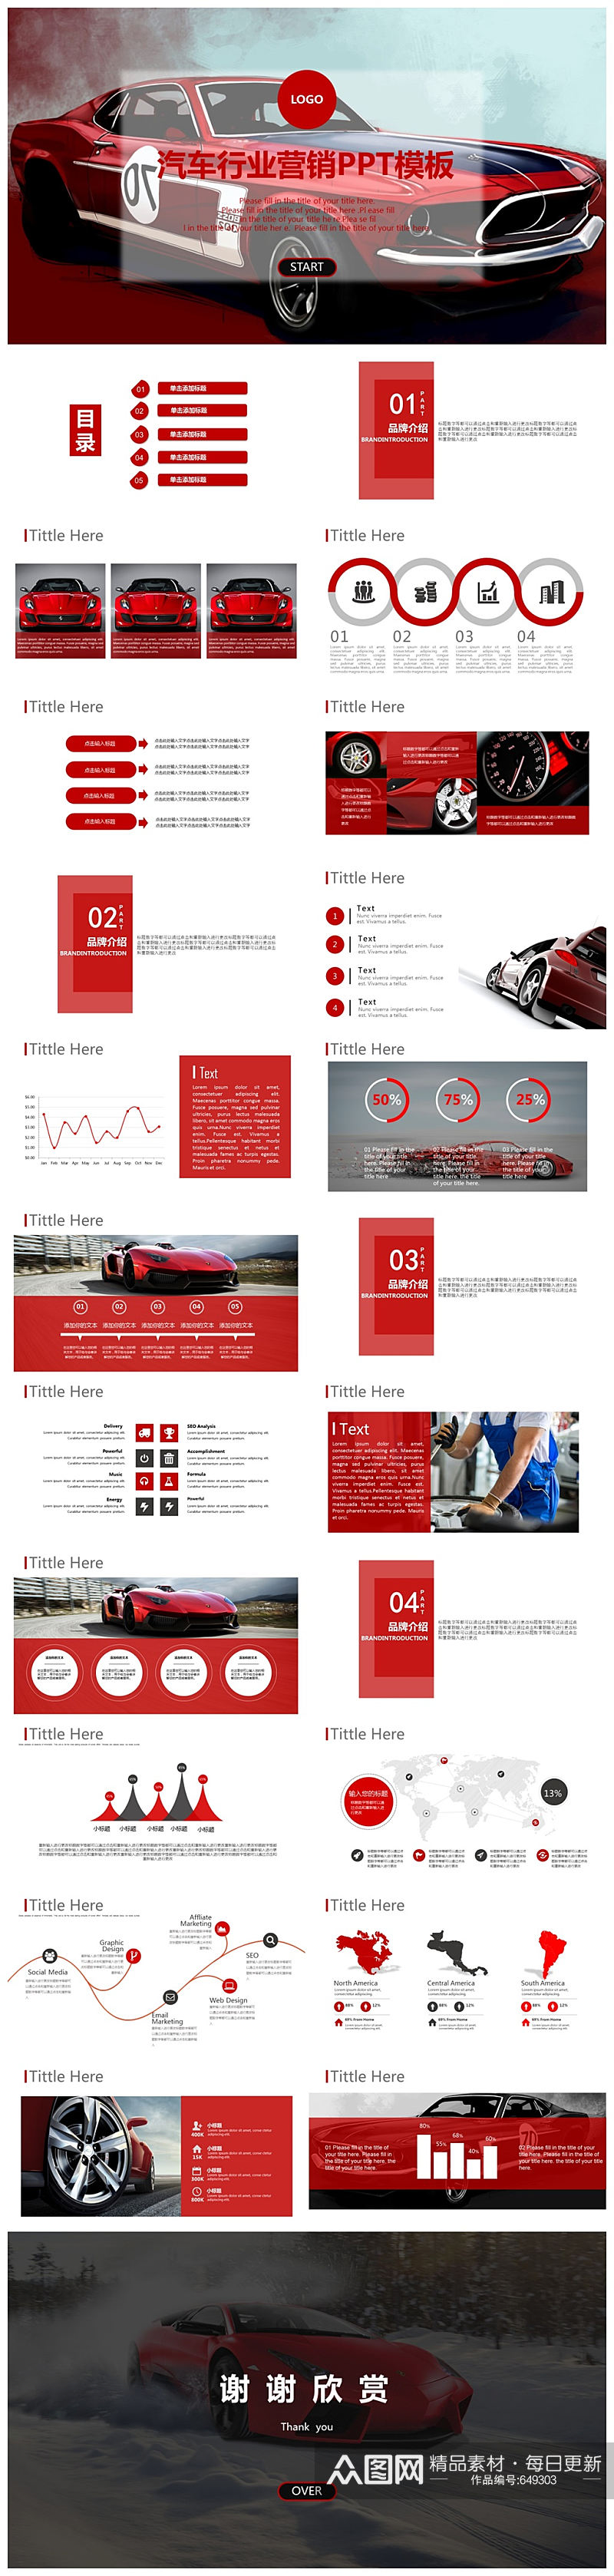 红色汽车行业营销PPT模板素材